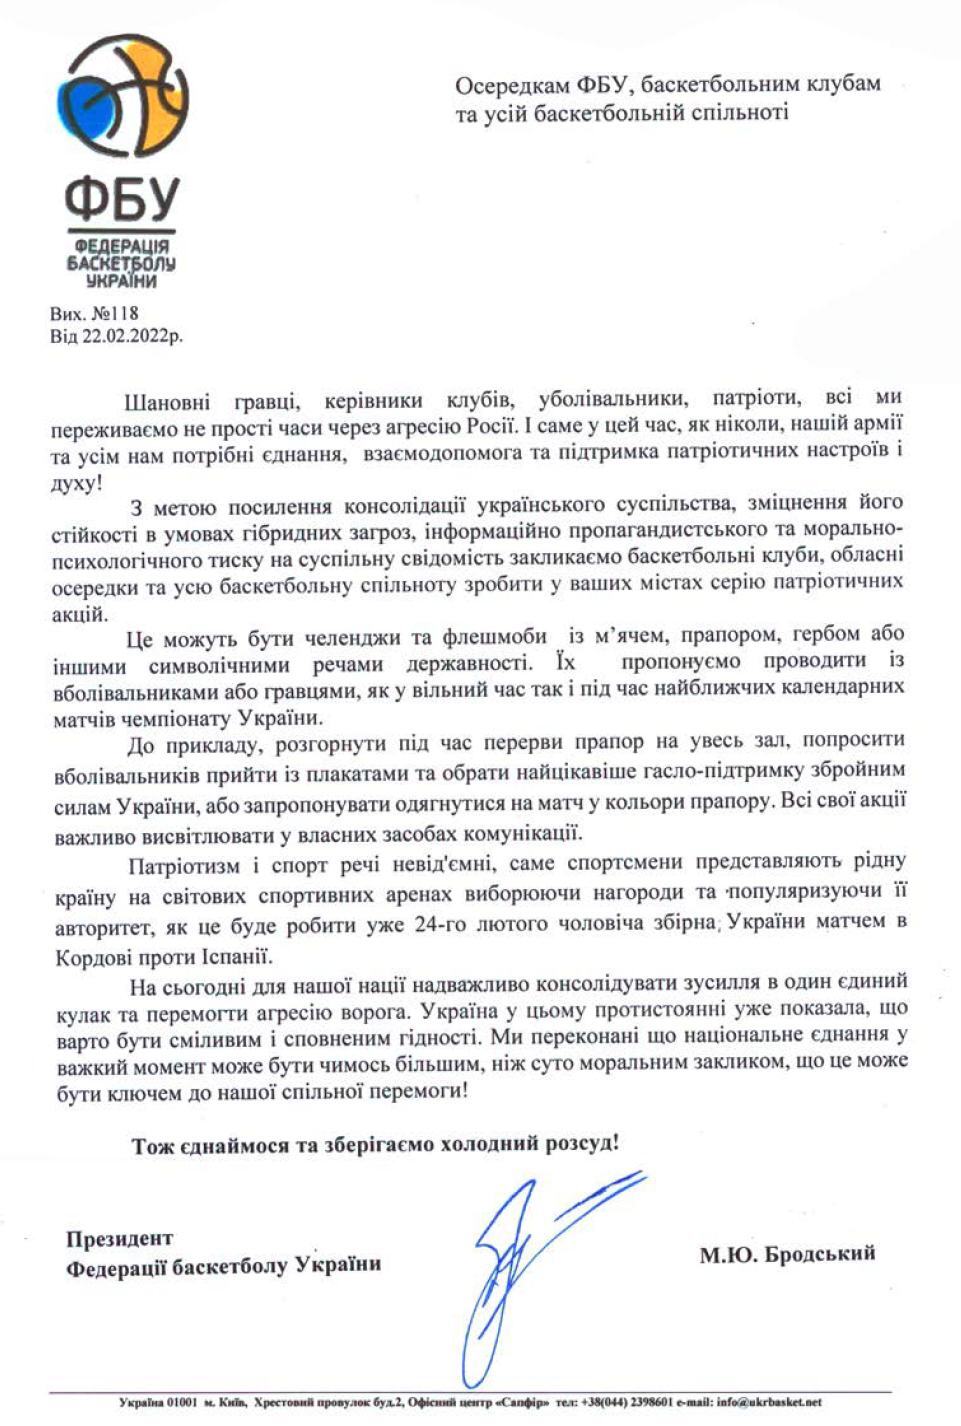 ФБУ призвала баскетбольную общественность и всех украинцев к единению 3 - basket.com.ua